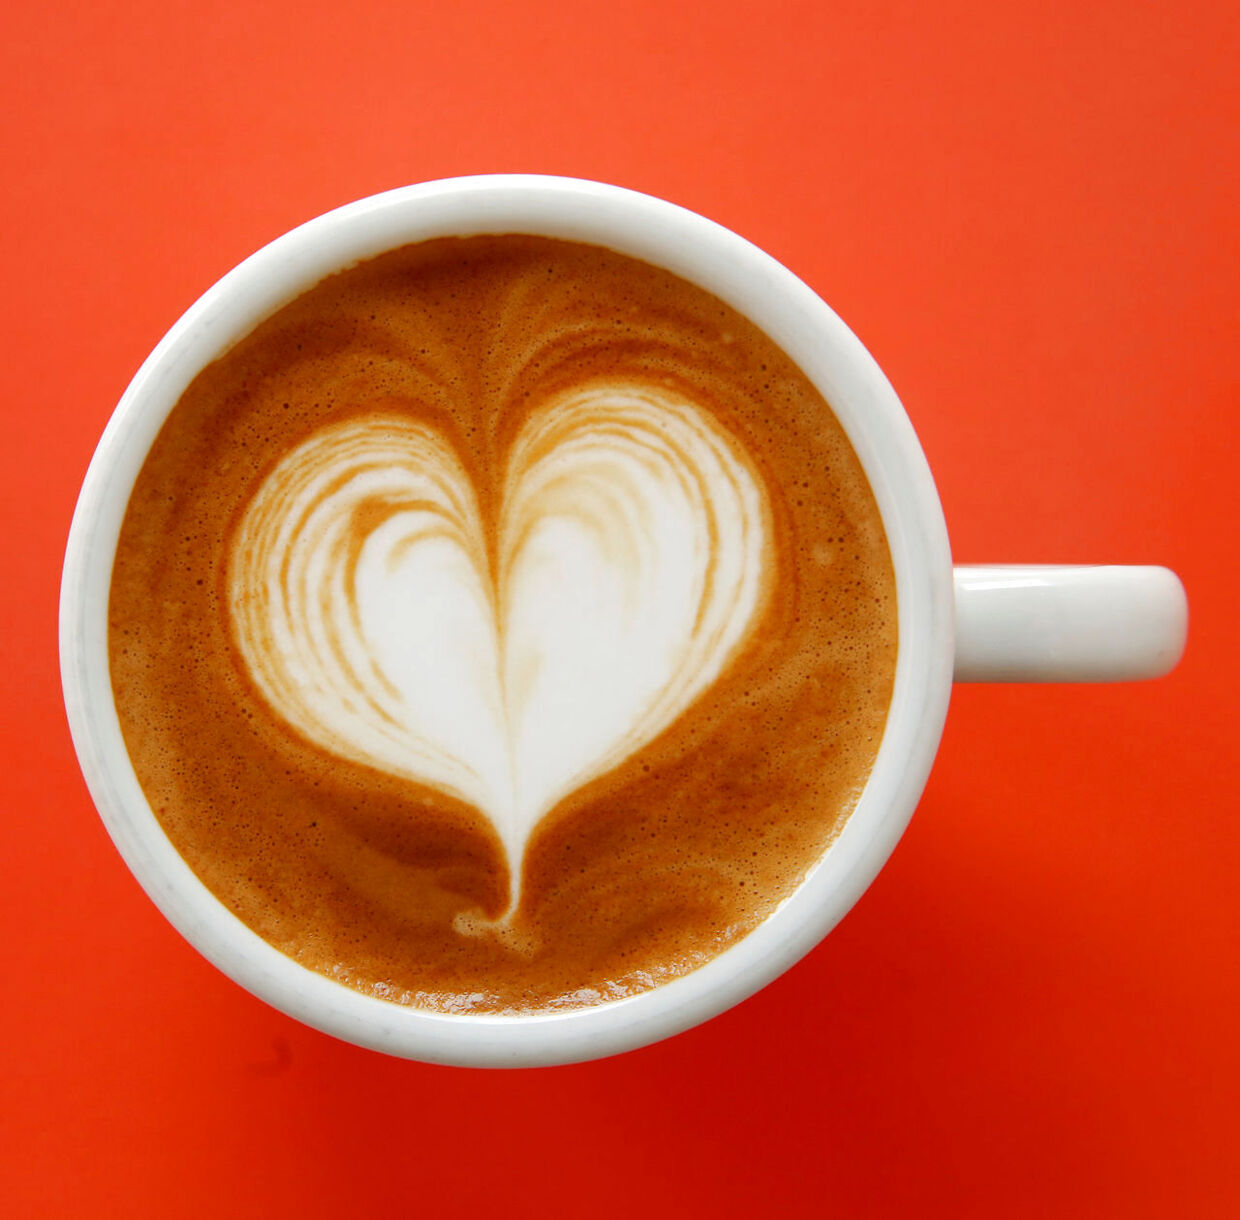 Kaffebønner indeholder poplyphenoler, mens mælk er rigt på protein. Kombinationen af de to kan have en antiinflammatorisk effekt.